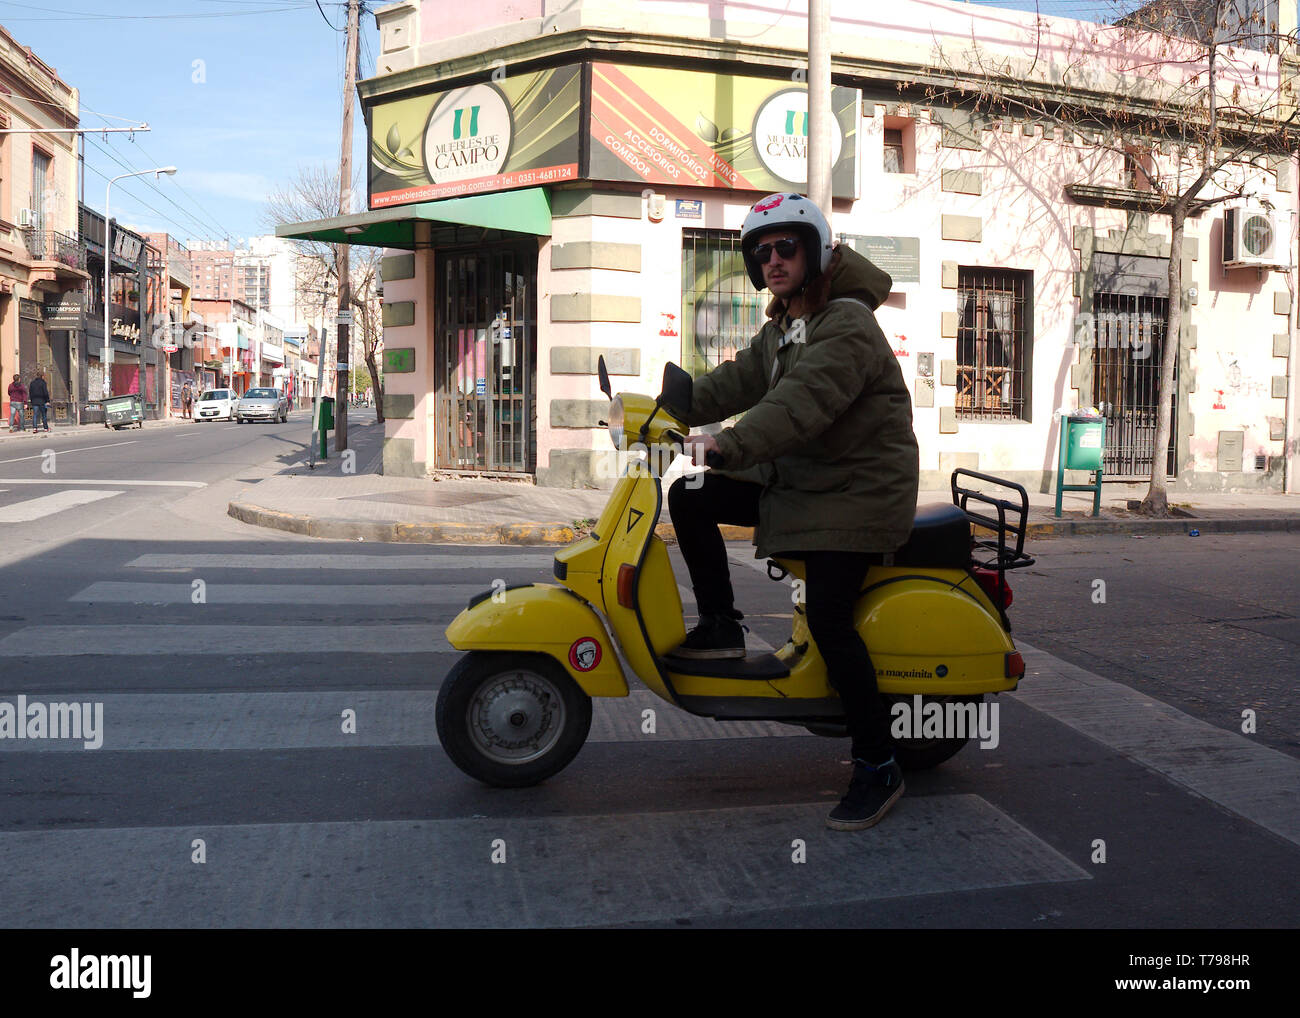 La città di Cordoba, Cordoba, Argentina - 2019: un uomo che cavalca un ciclomotore motociclo presso il quartiere Güemes, un quartiere alla moda, nel cuore della città. Foto Stock